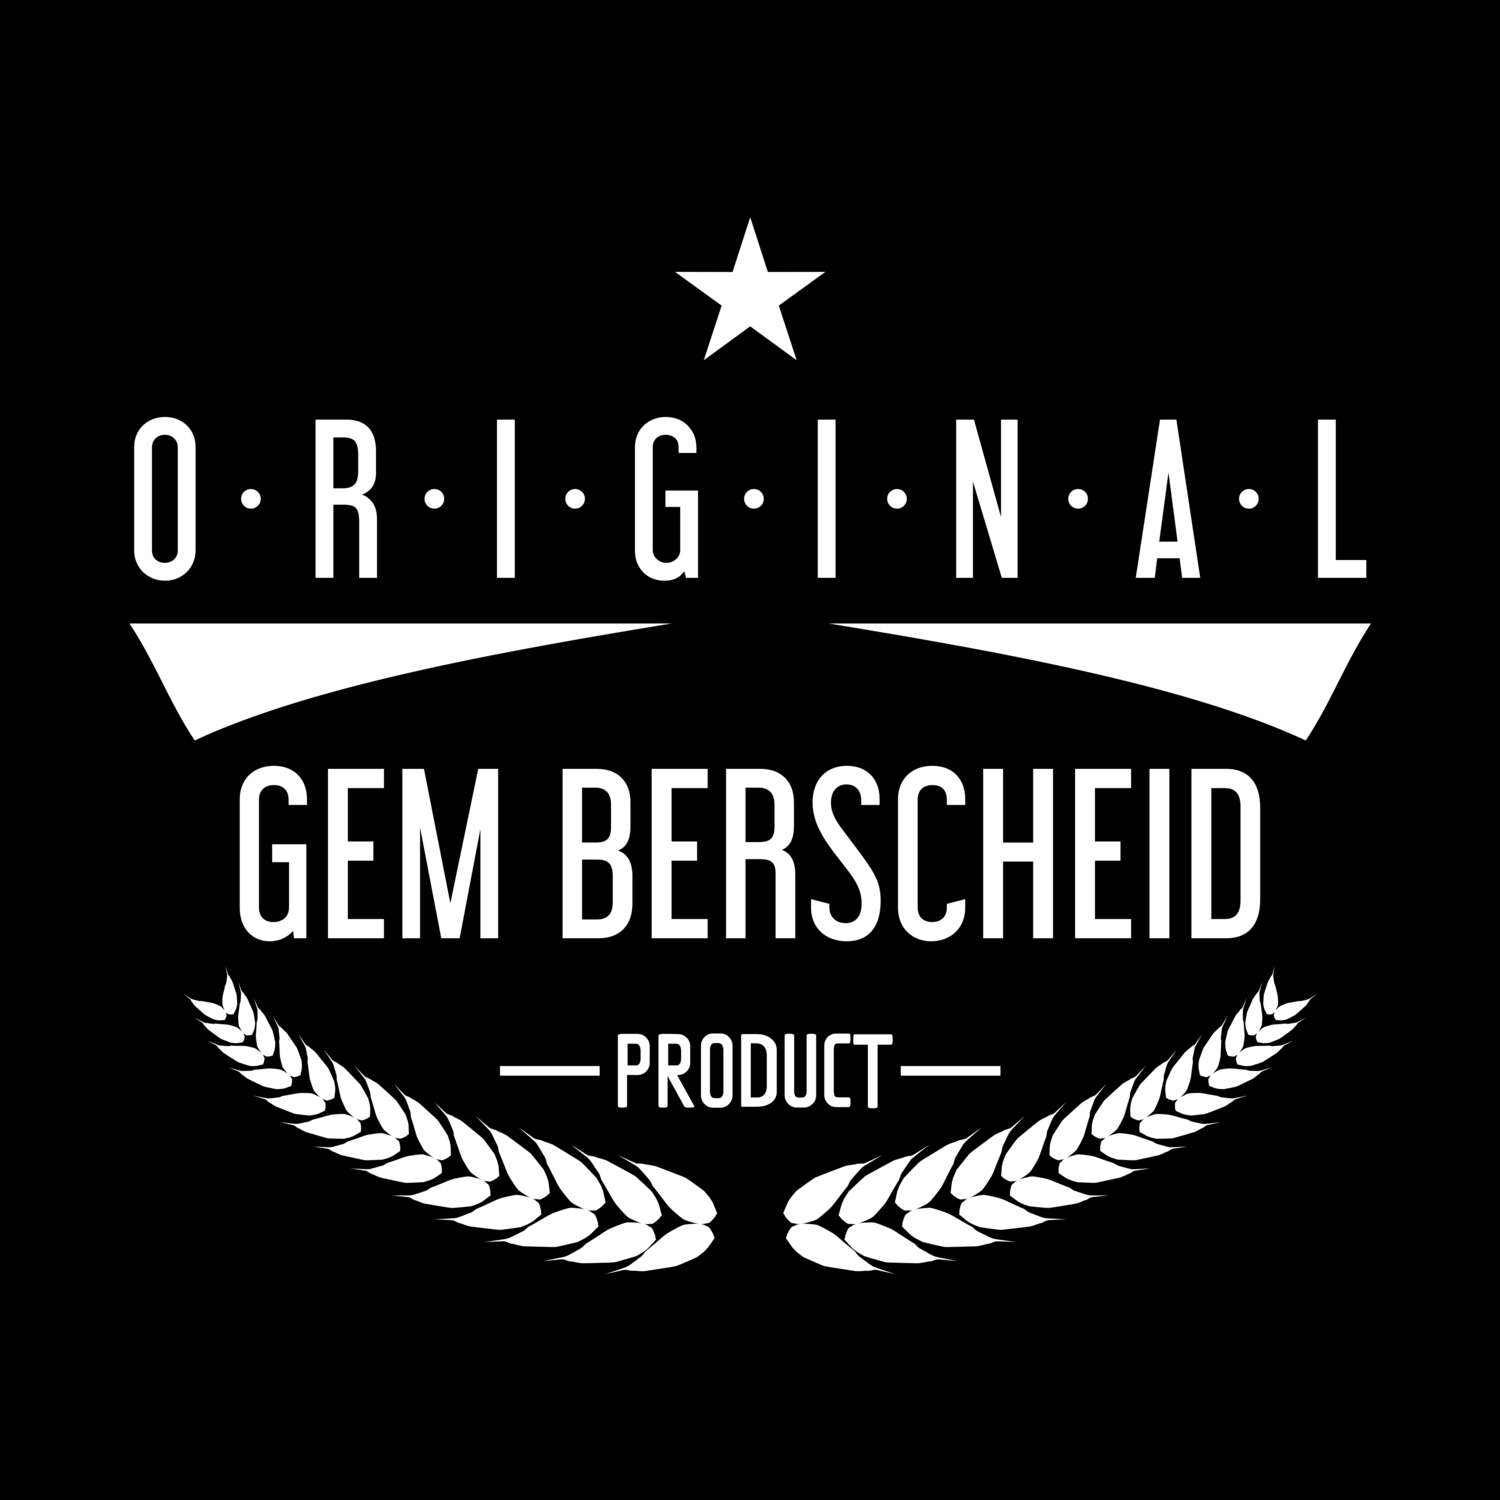 Gem Berscheid T-Shirt »Original Product«